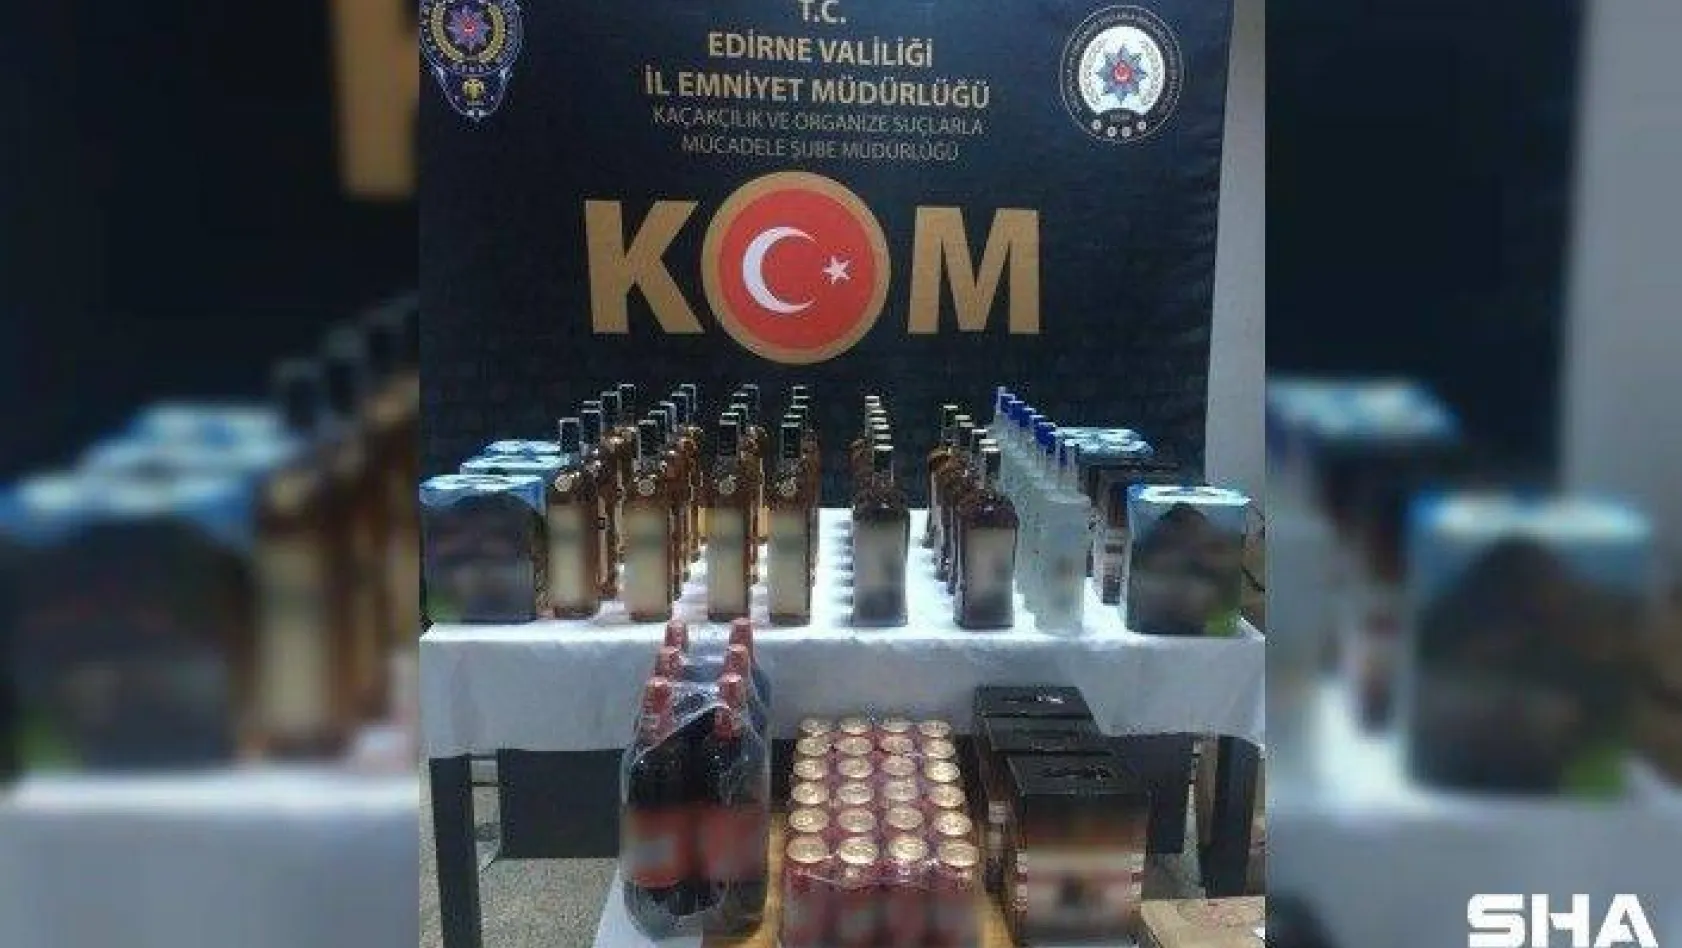 Edirne'de durdurulan otomobilde 82 şişe kaçak içki ele geçirildi